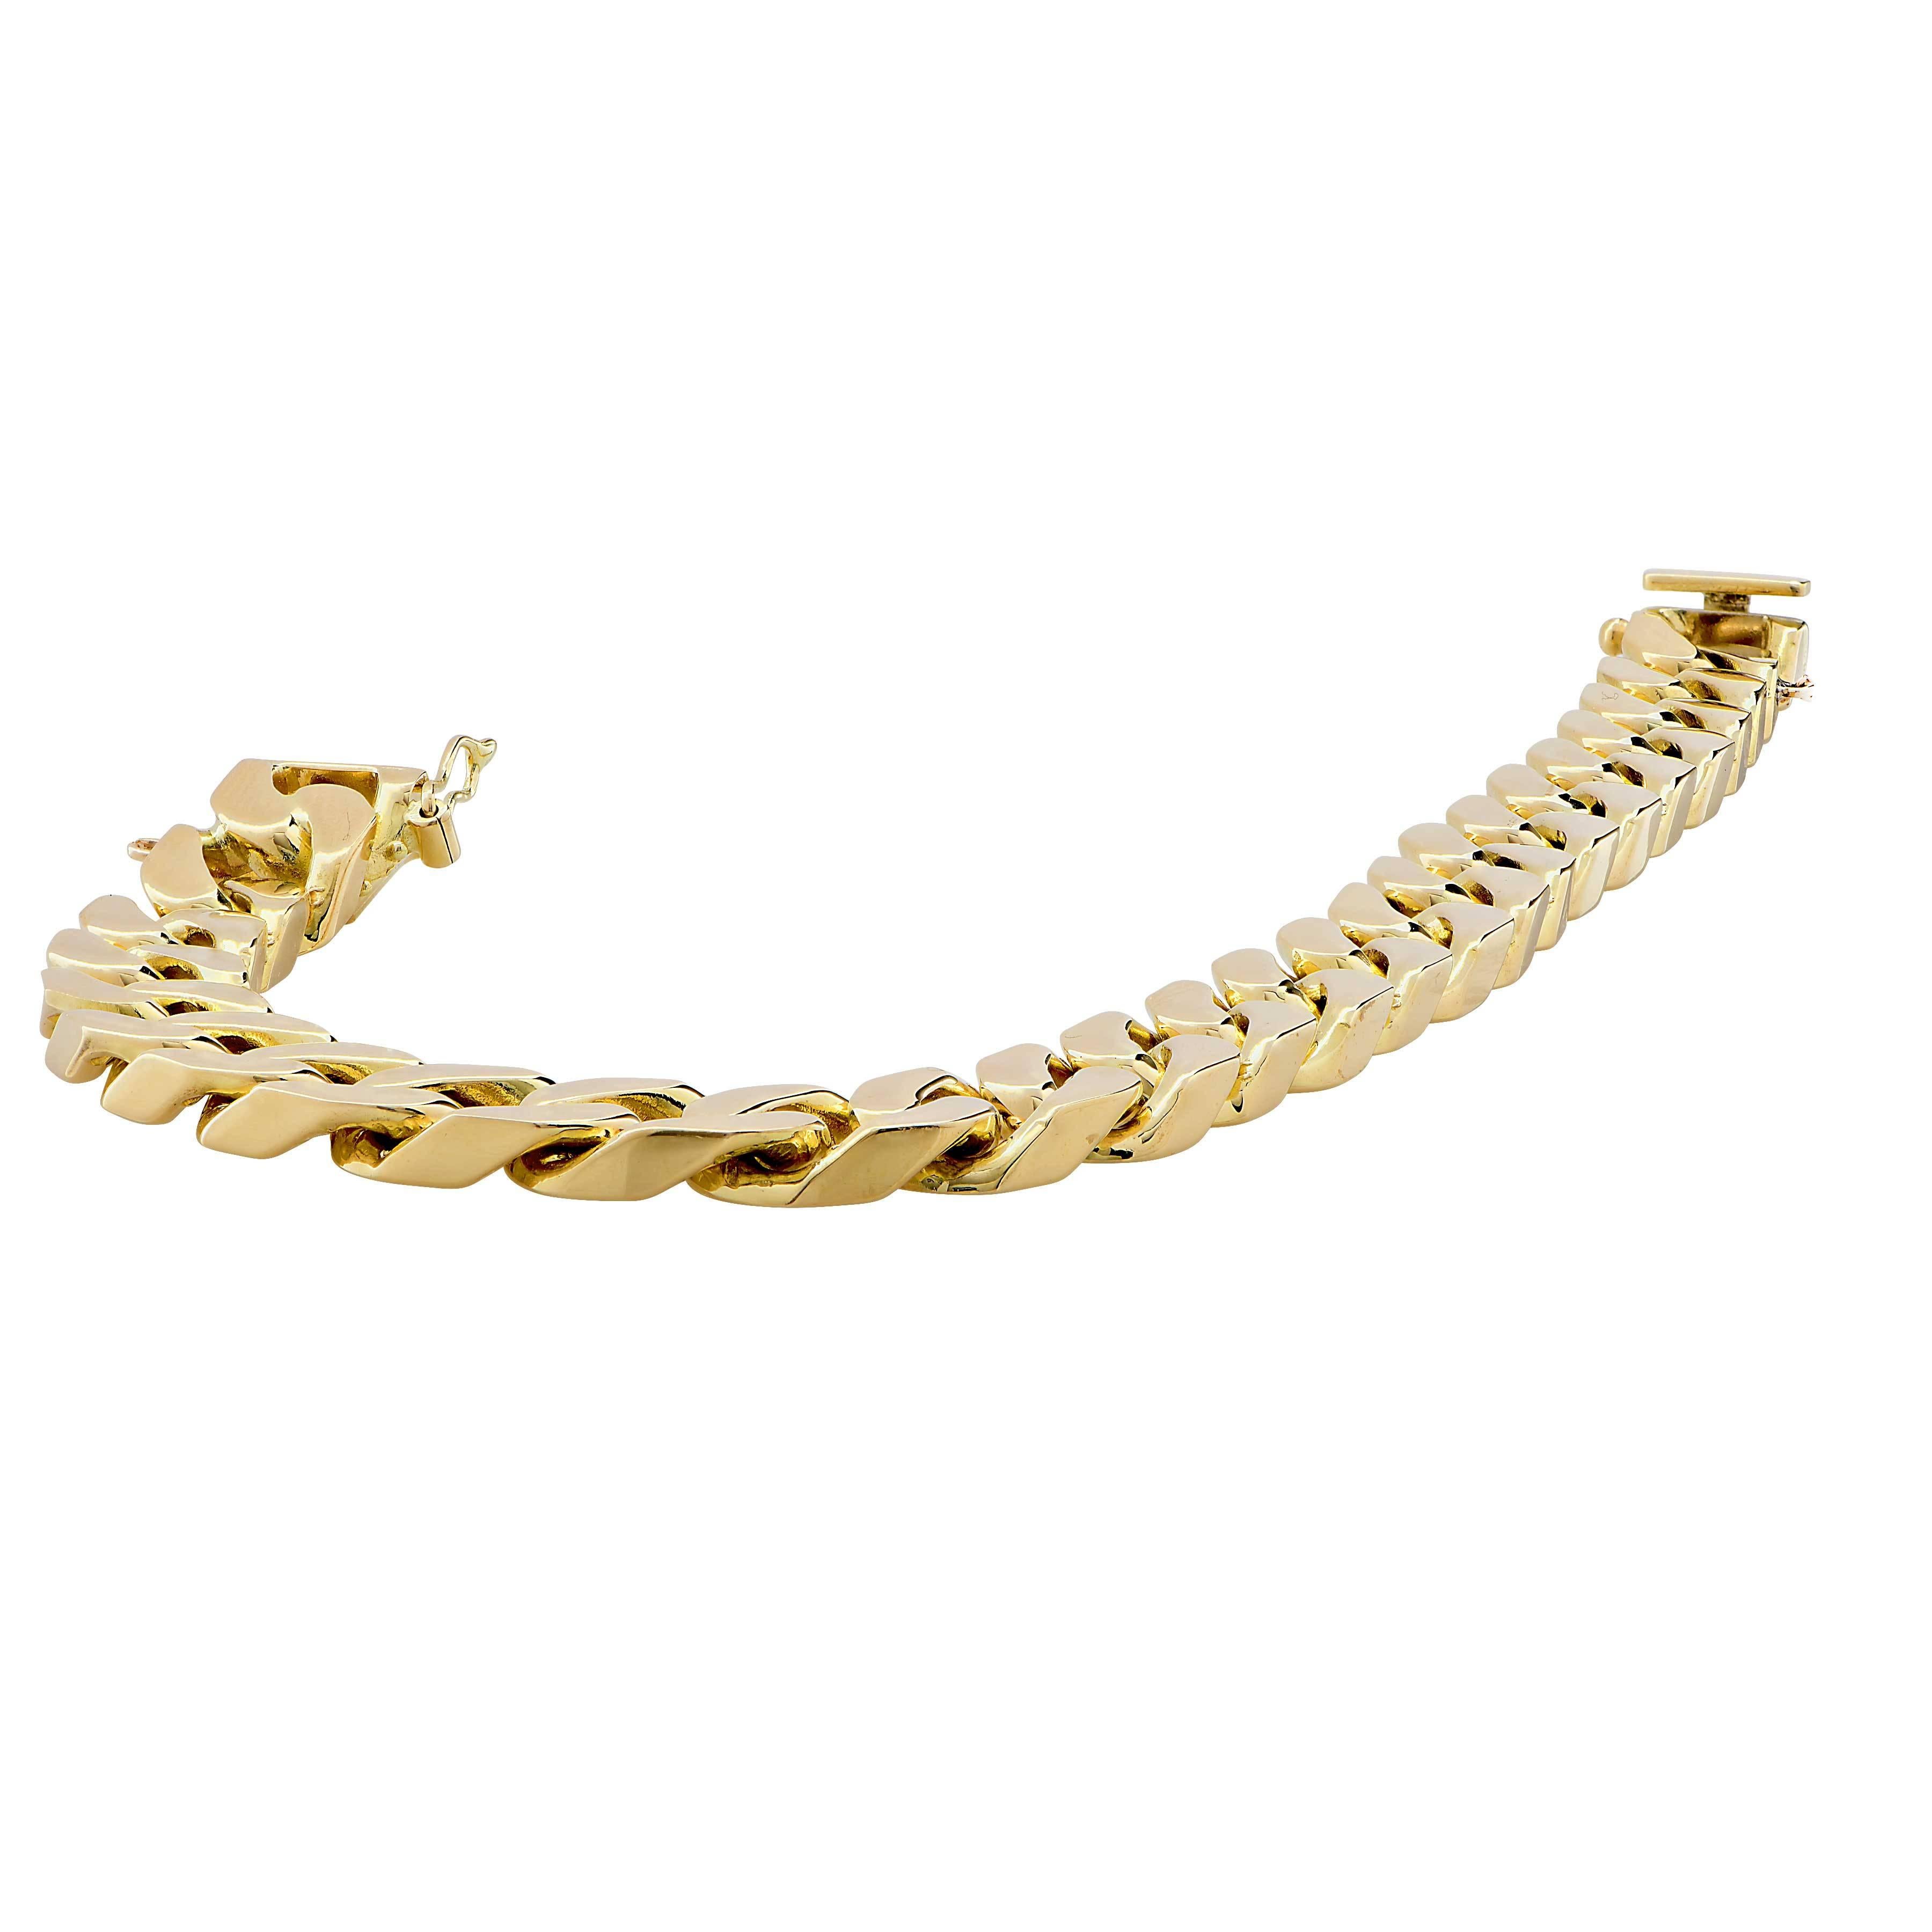 18 Karat Yellow Gold Link Bracelet
Bracelet Length: 7.5 Inches
Metal Weight: 65.3 Grams
Metal Type: 18 Karat Yellow Gold (Stamped or tested)